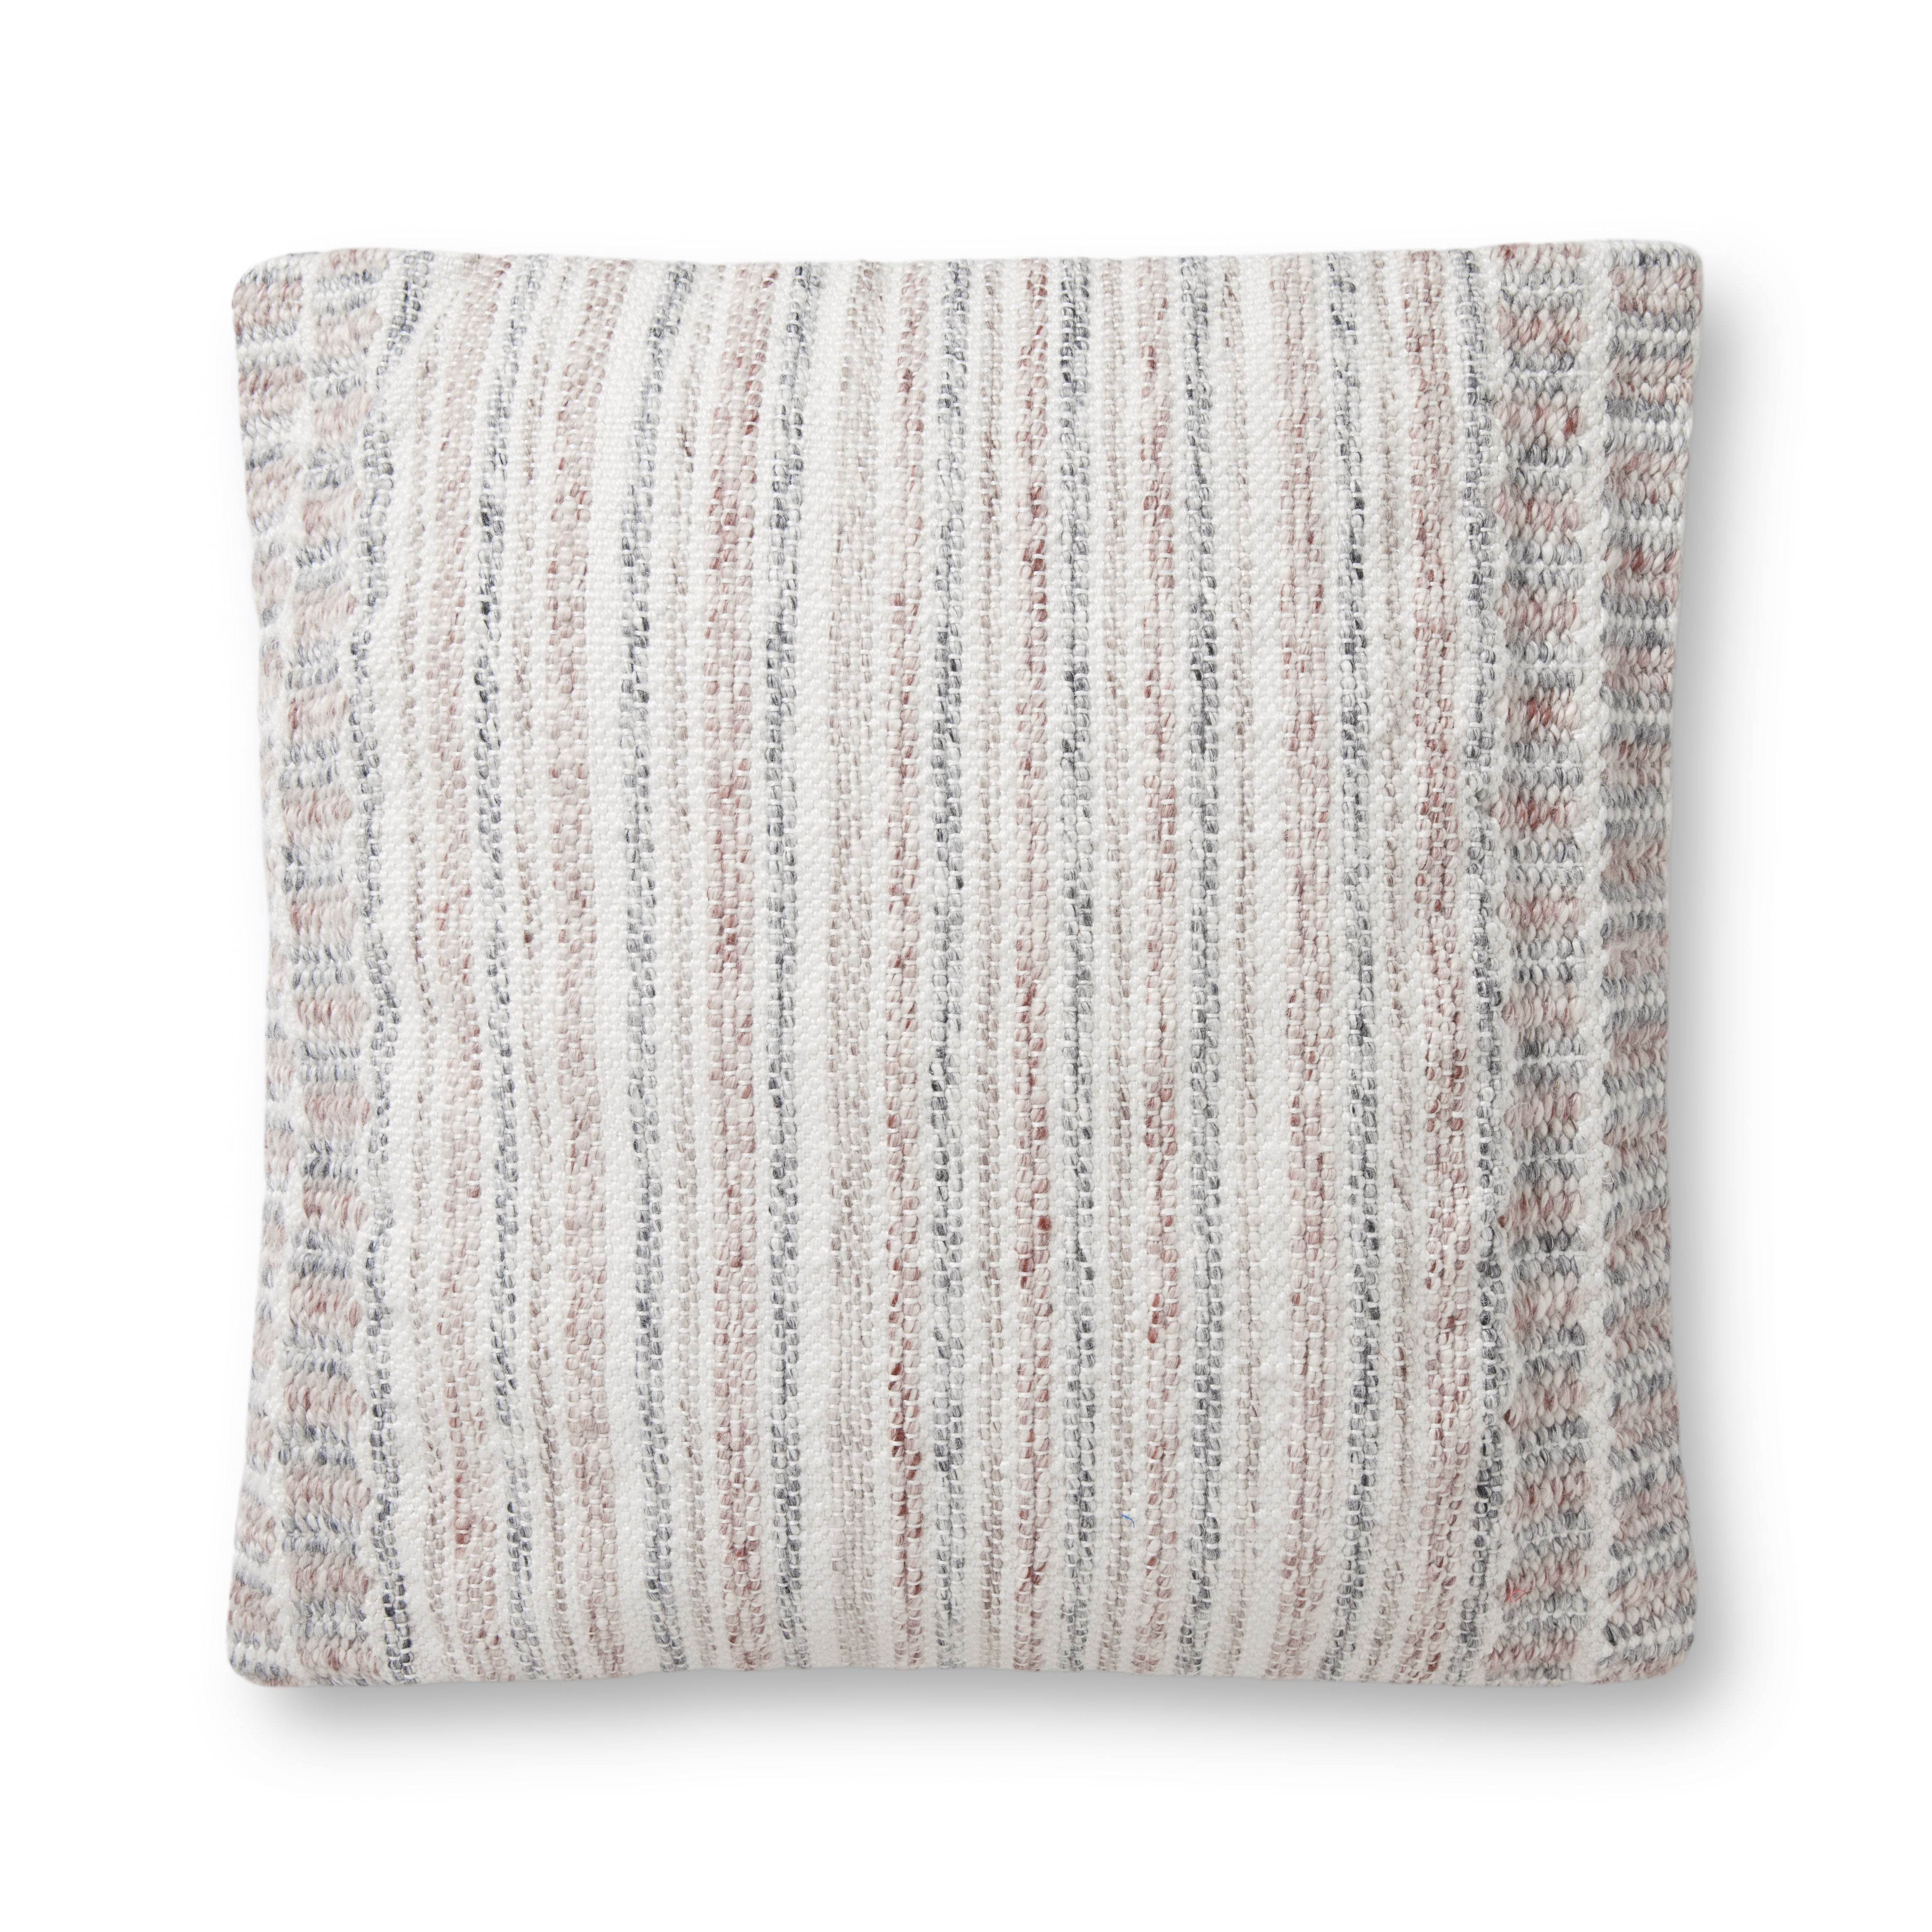 PLL0070 Grey / Natural Pillow